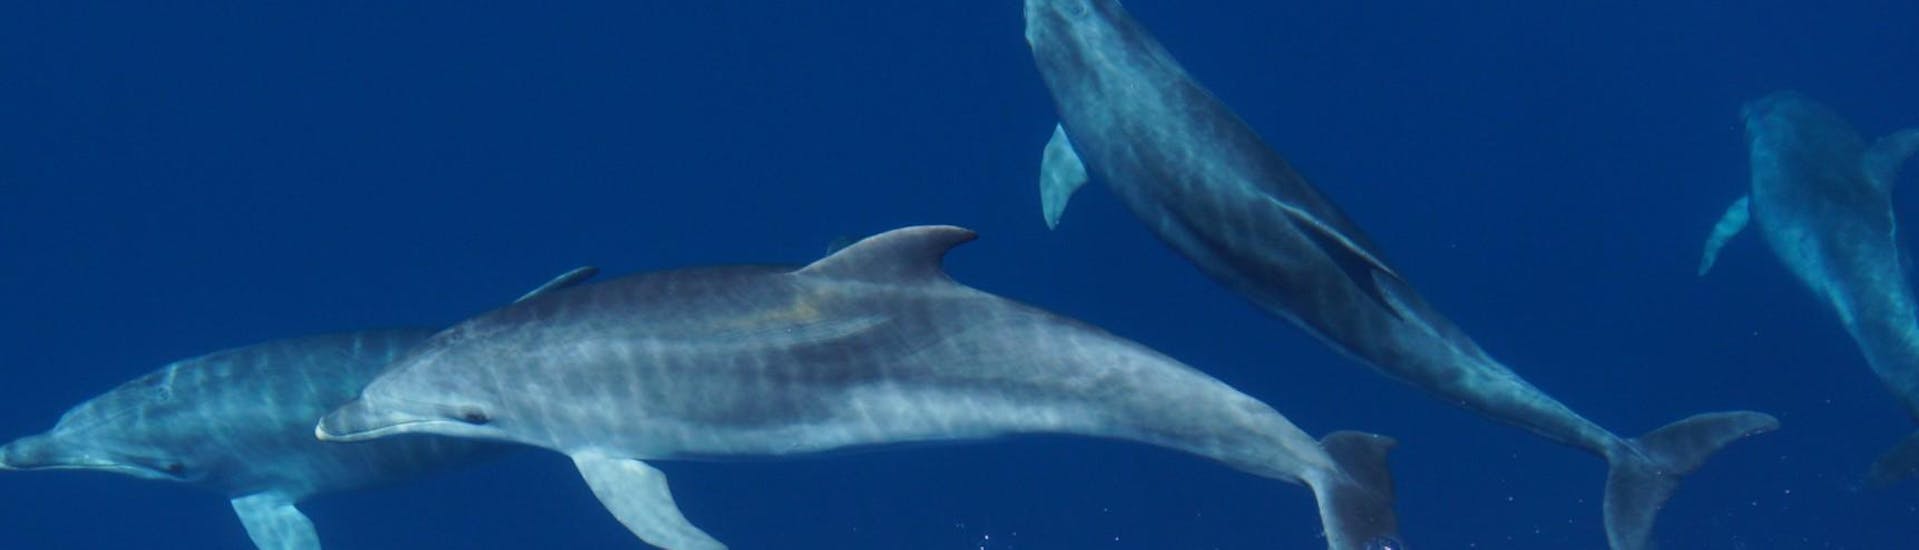 I bellissimi e curiosi delfini che potremmo incontrare durante l'avvistamento delfini in barca ad Alghero con Progetto Natura Alghero.